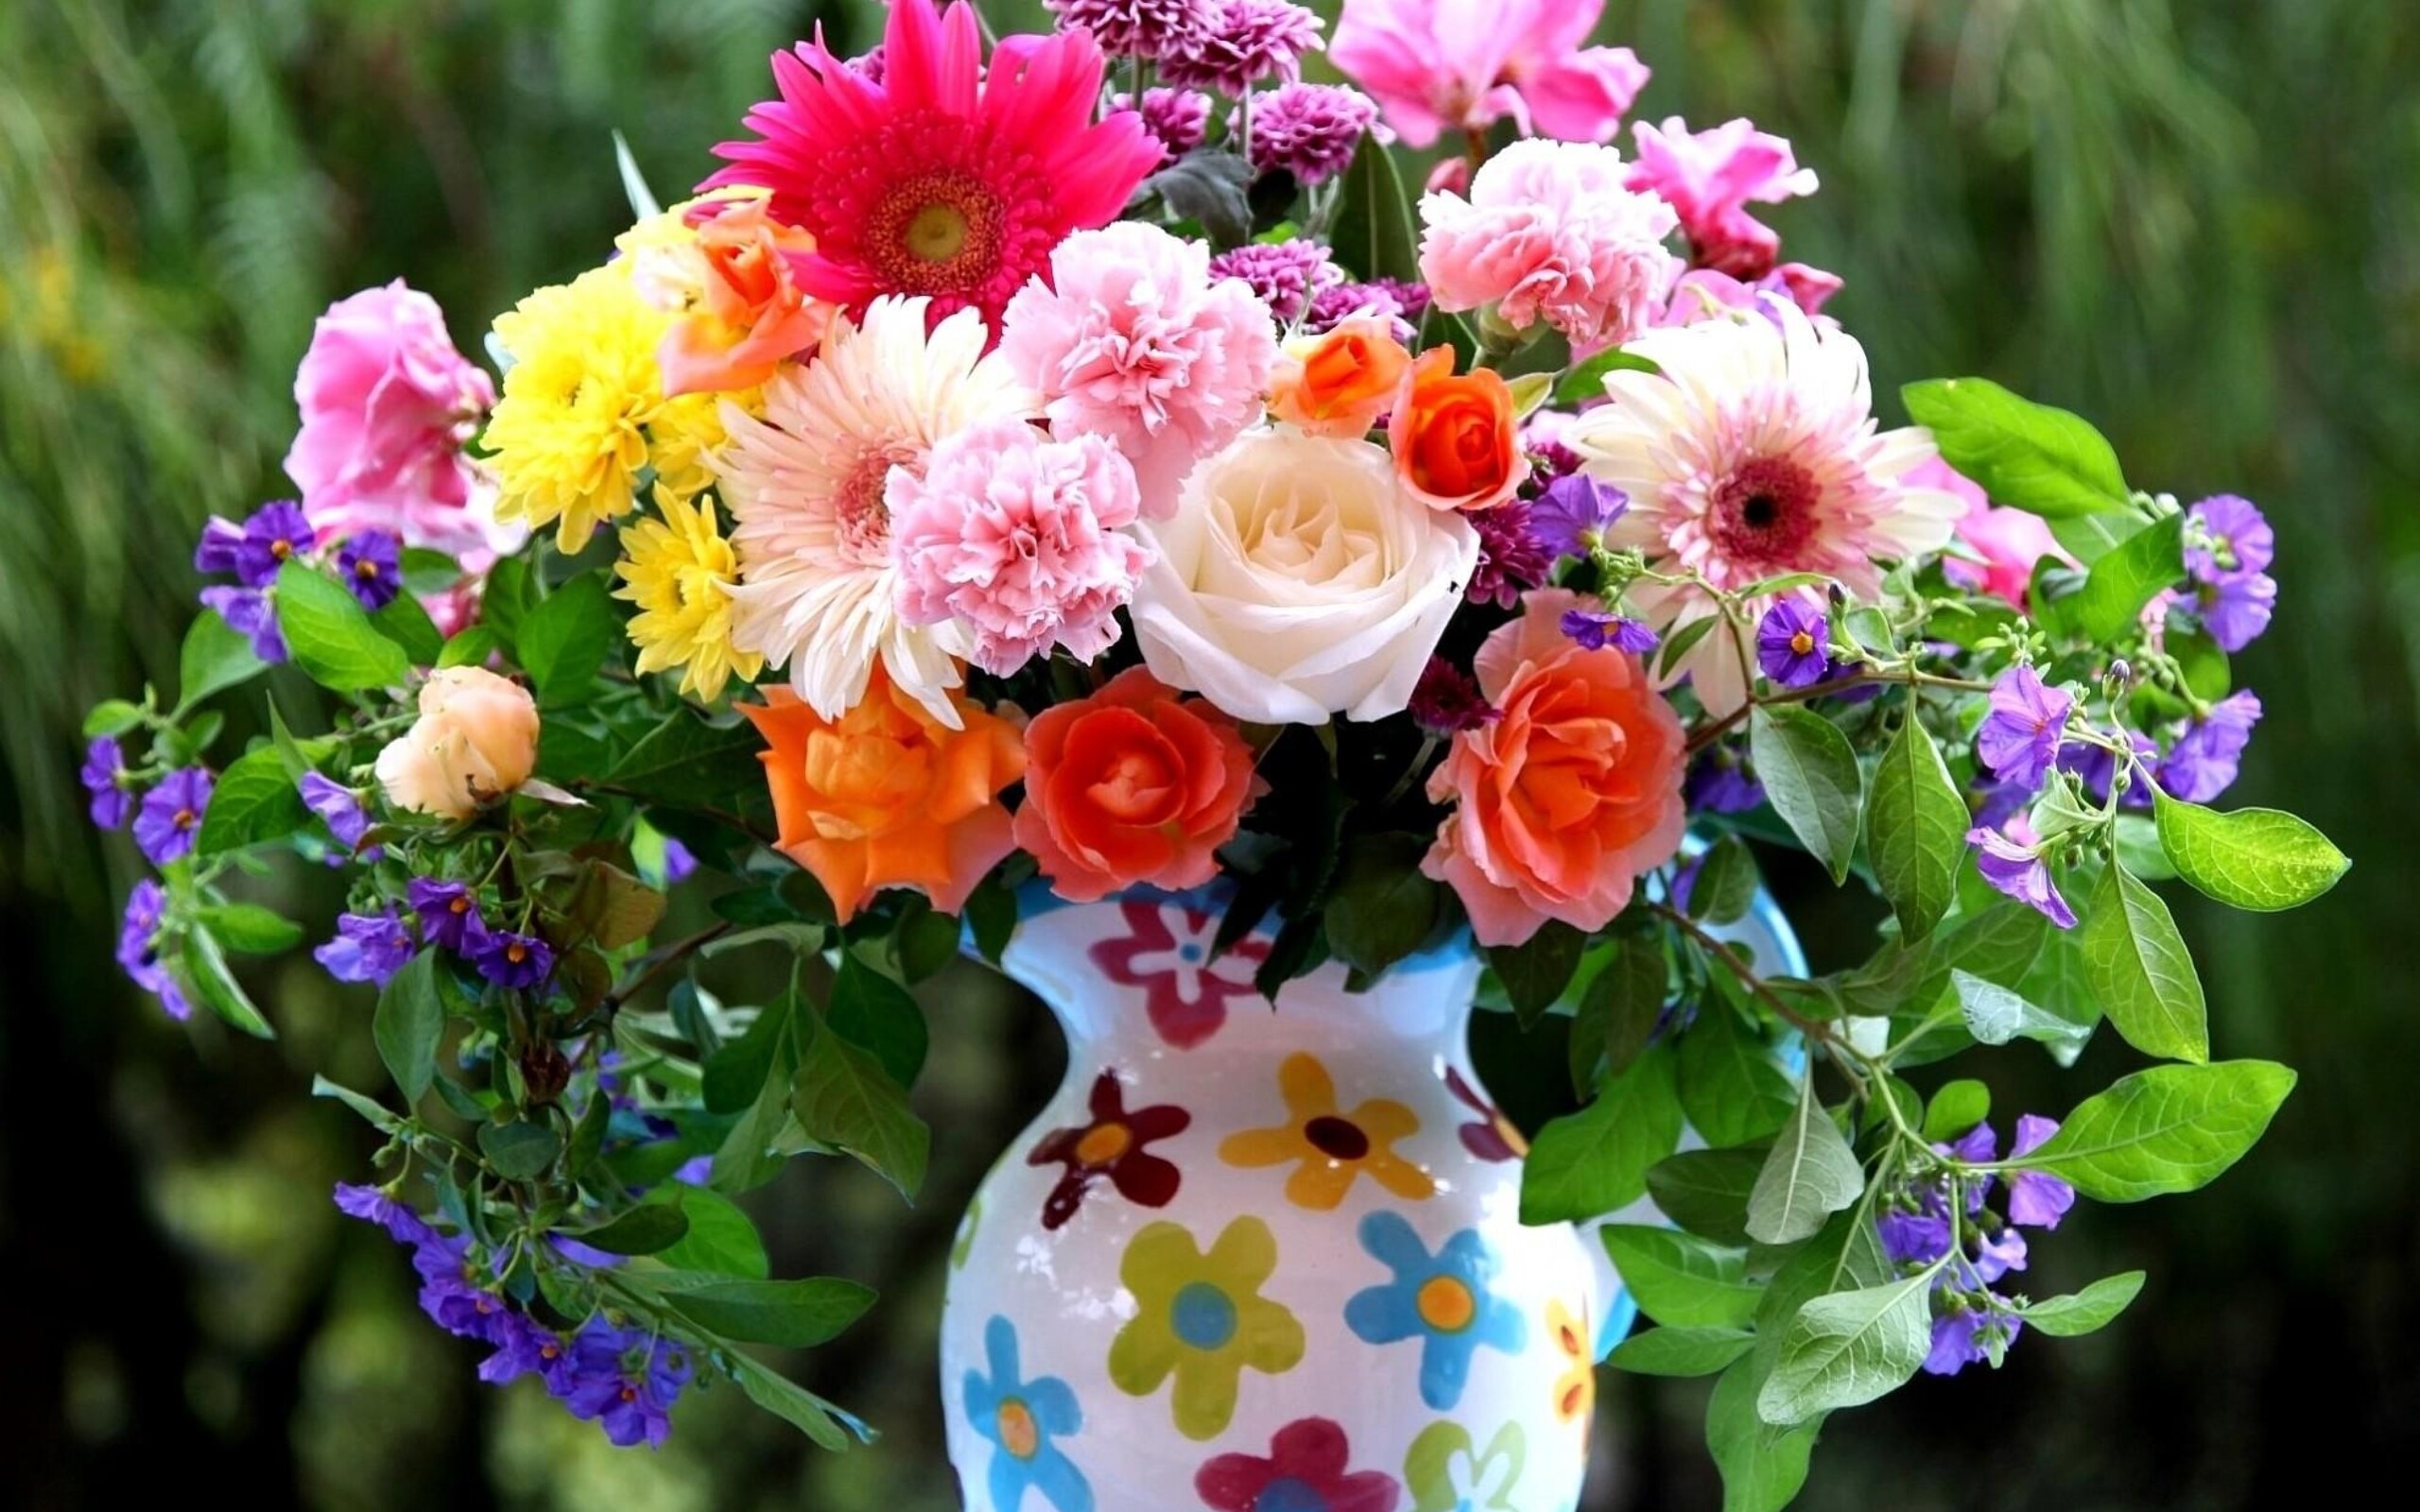 Cvety. Летний букет. Красивый яркий букет. Красивый летний букет цветов. Красивые яркие цветы.